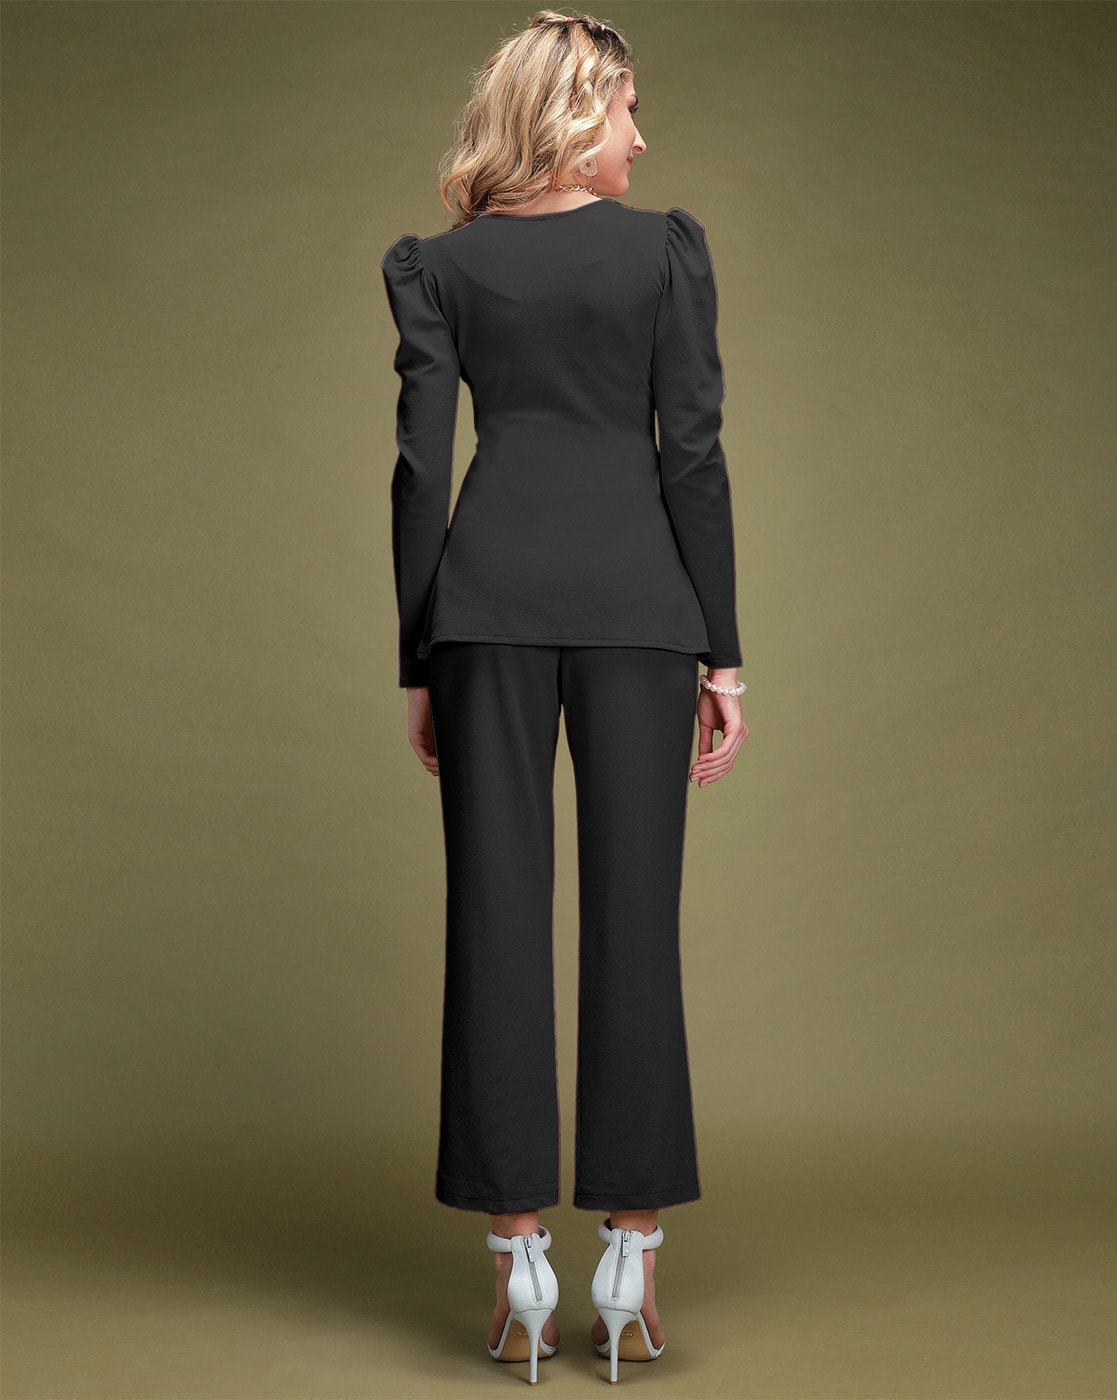 Jovani 07293 | Black Two Piece Tuxedo Style Evening Pant Suit